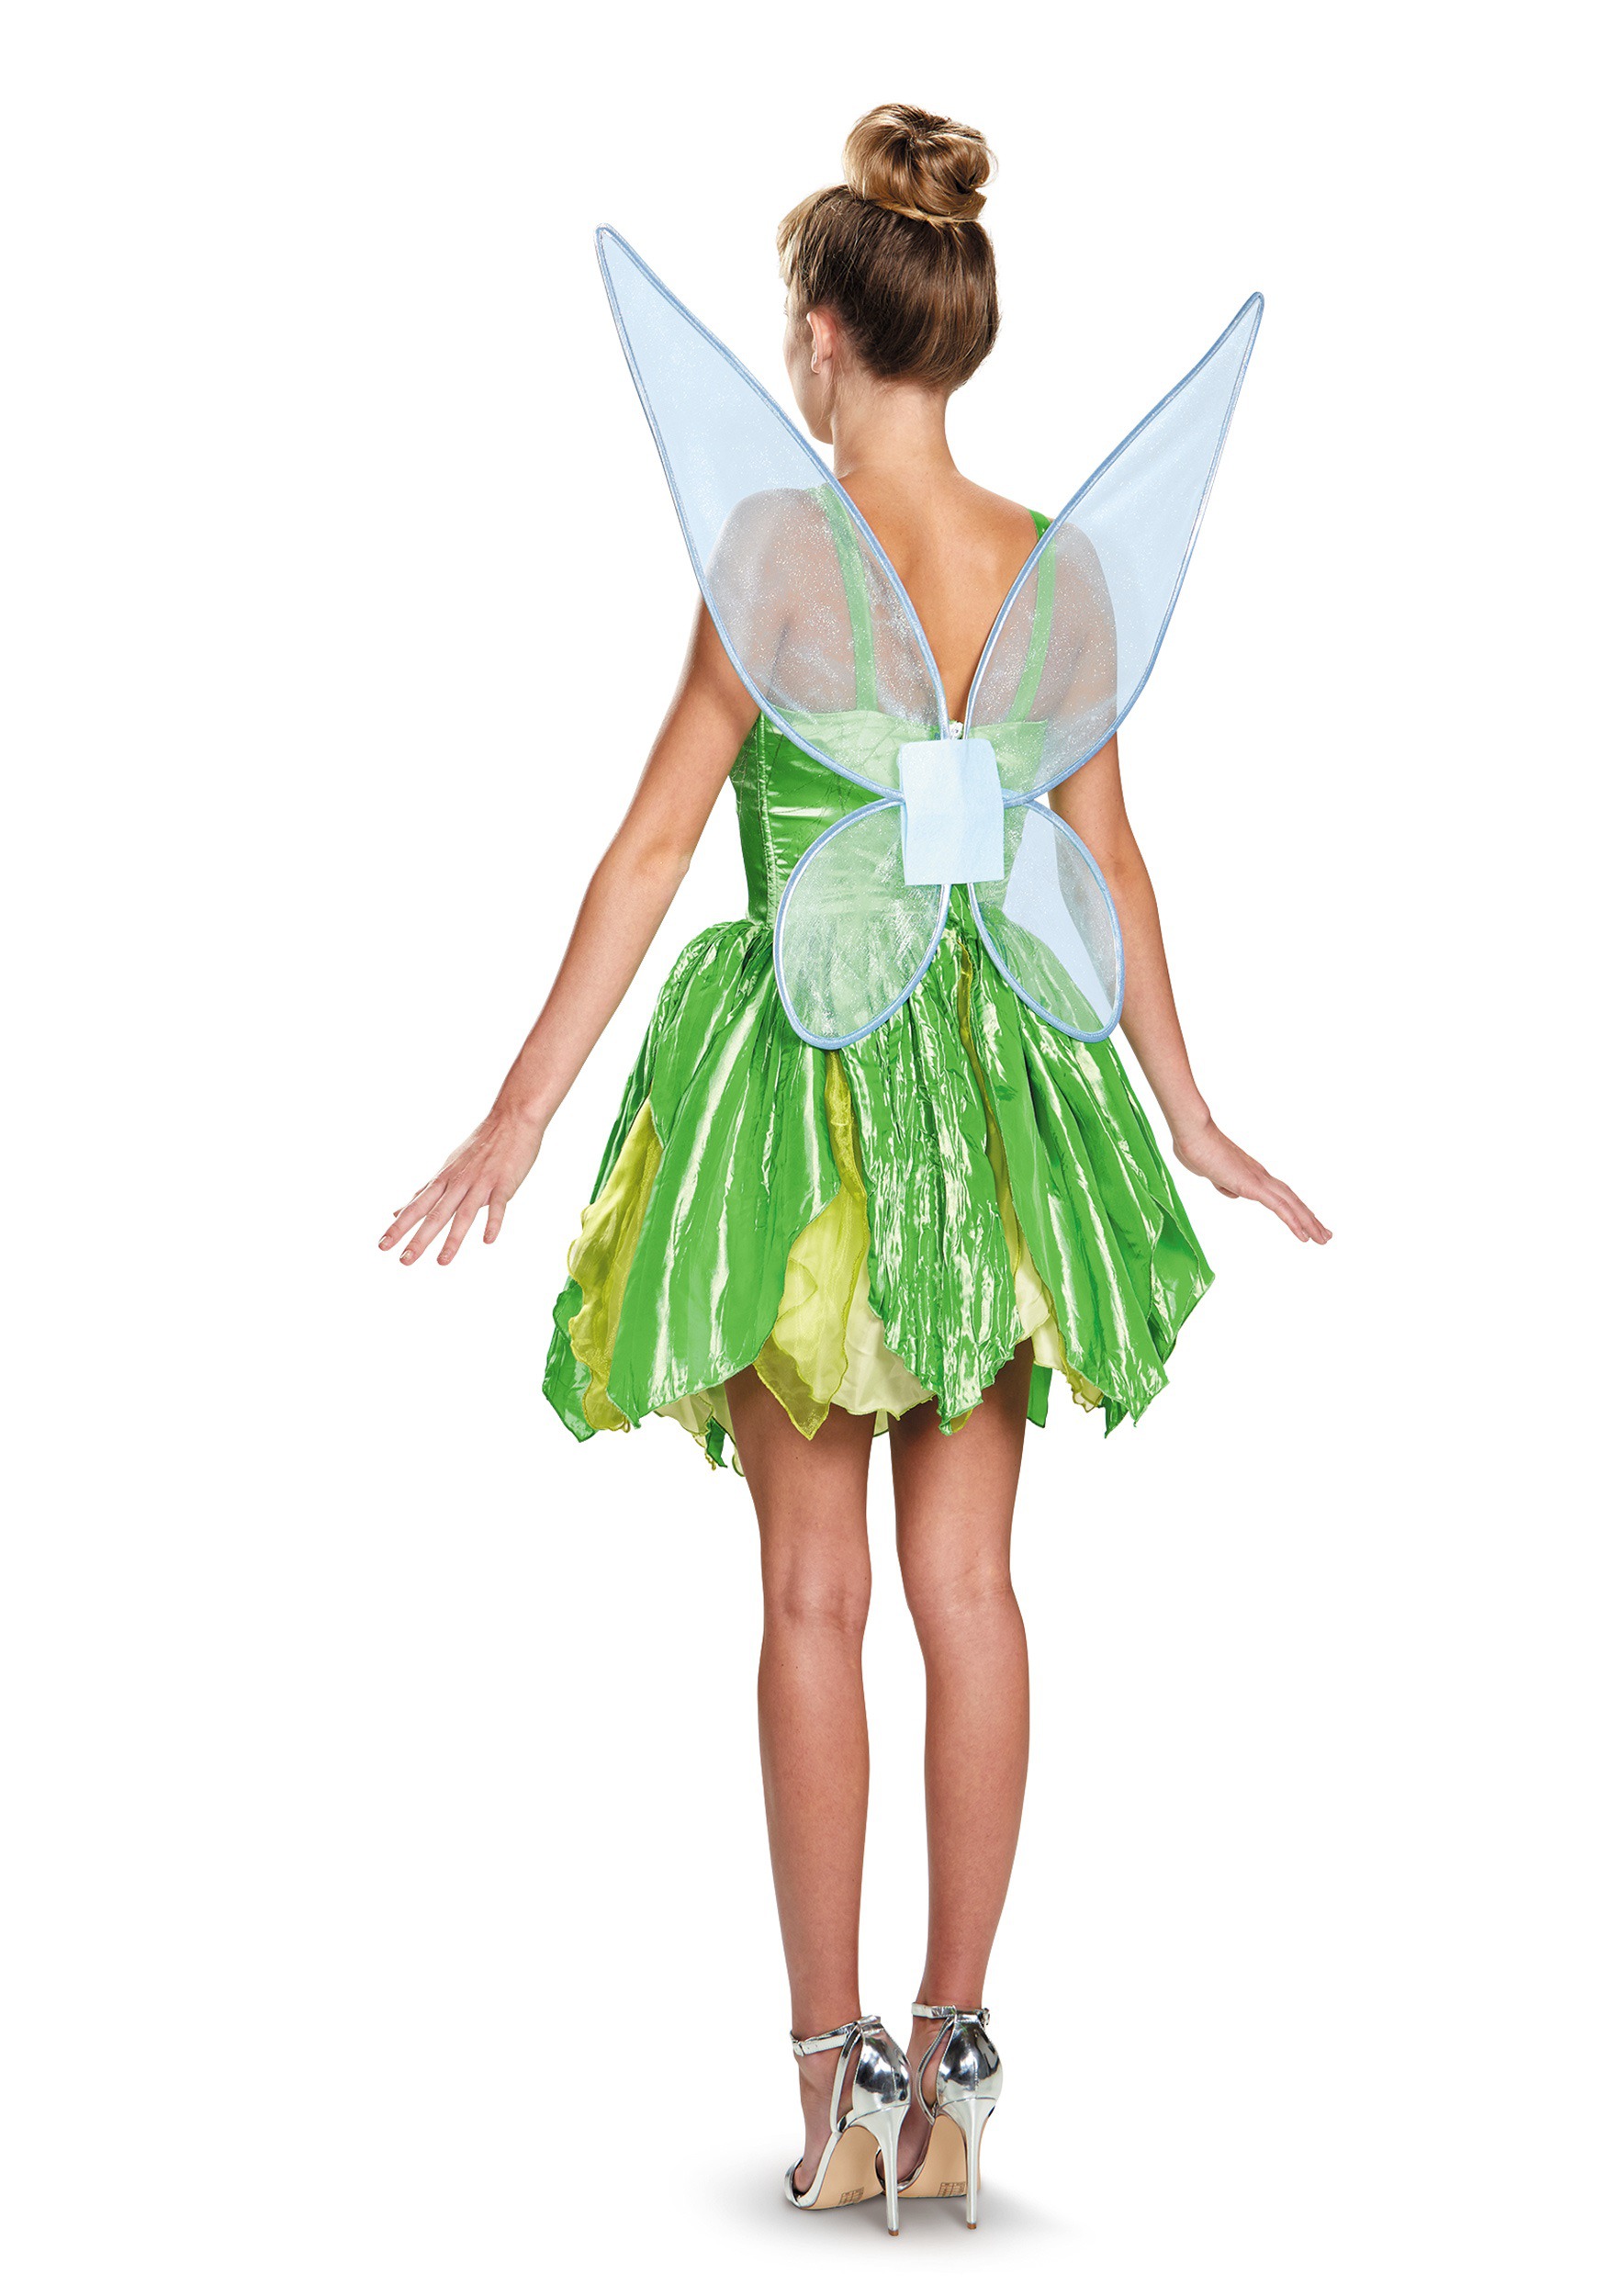 Tinkerbell Costume For Girls